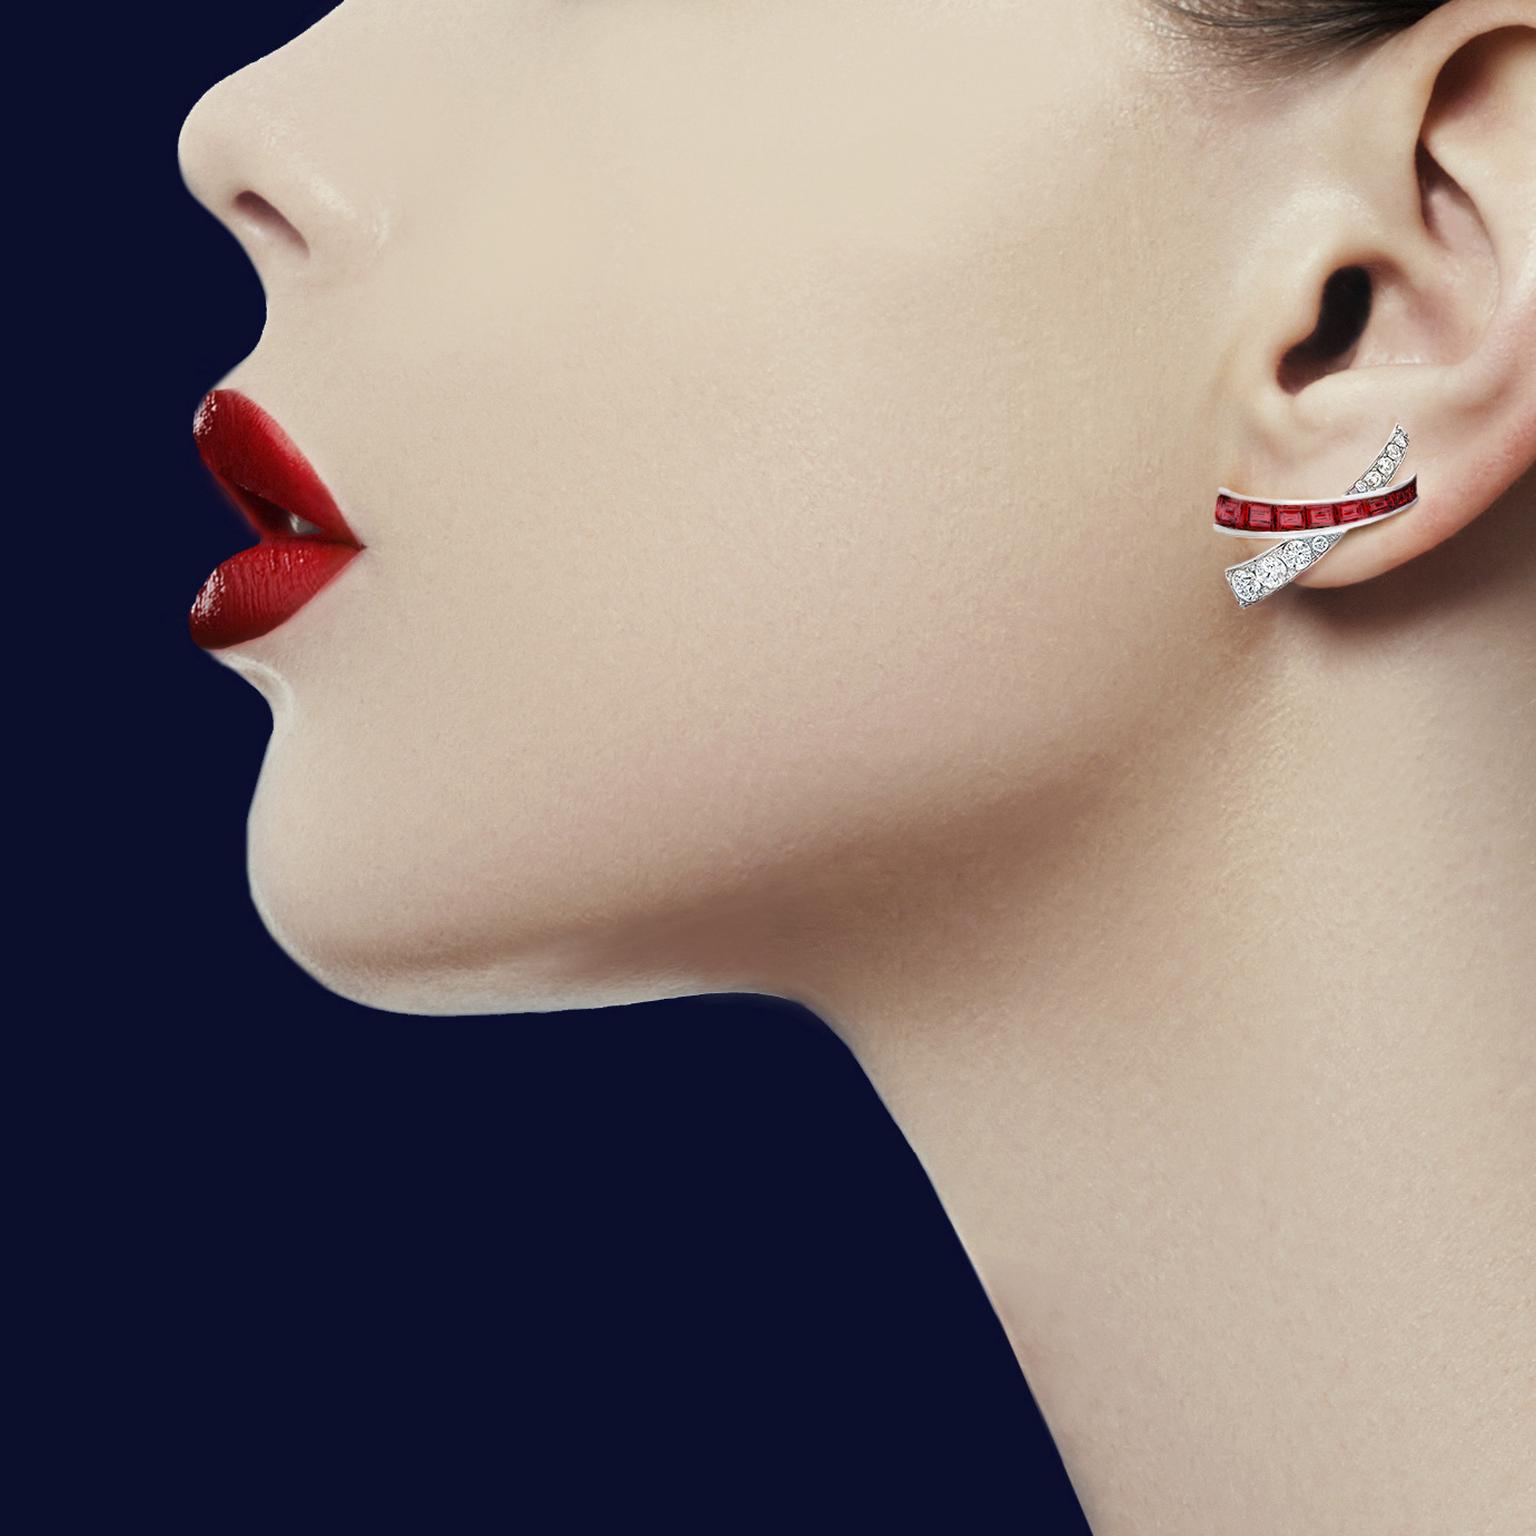 Kiss stud earrings by Graff